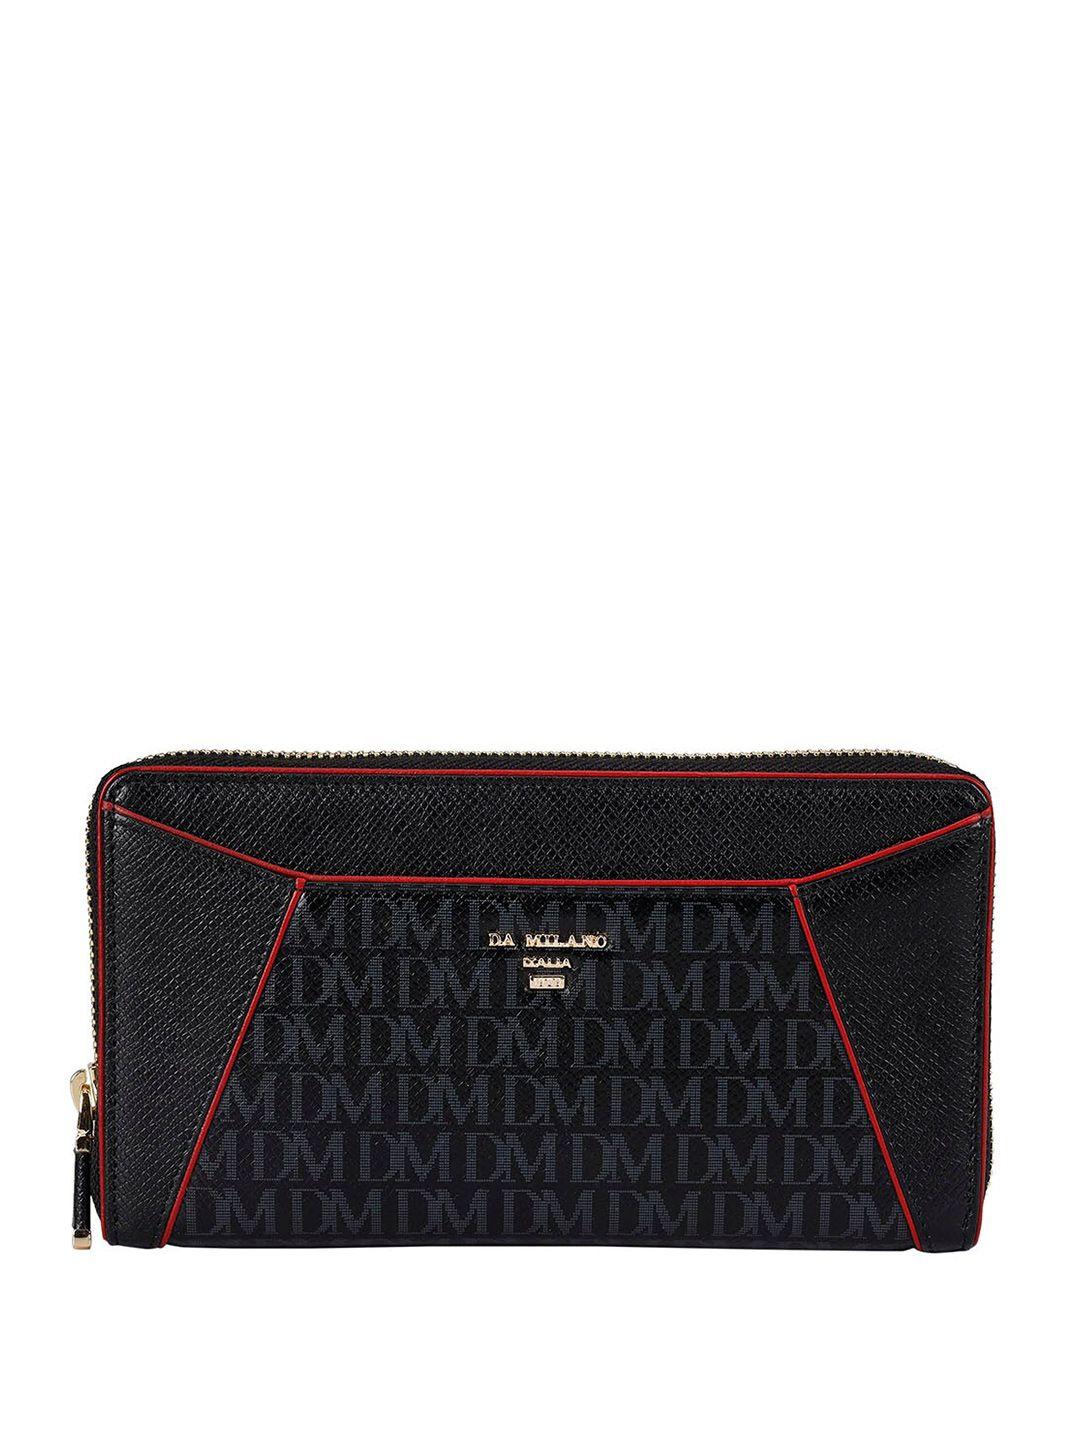 da milano women typography textured leather zip around wallet